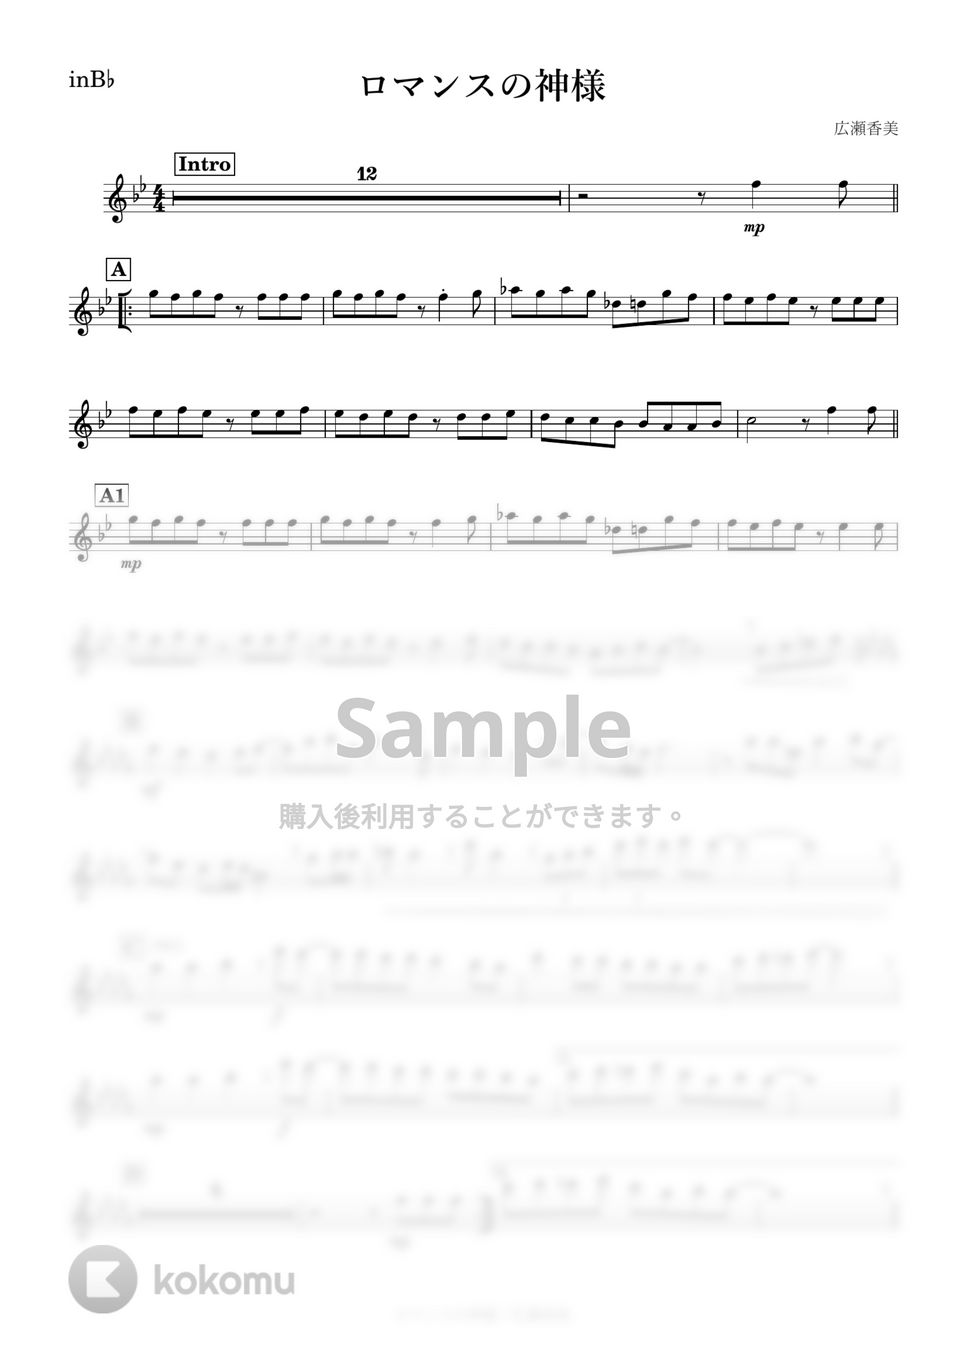 広瀬香美 - ロマンスの神様 (B♭) by kanamusic